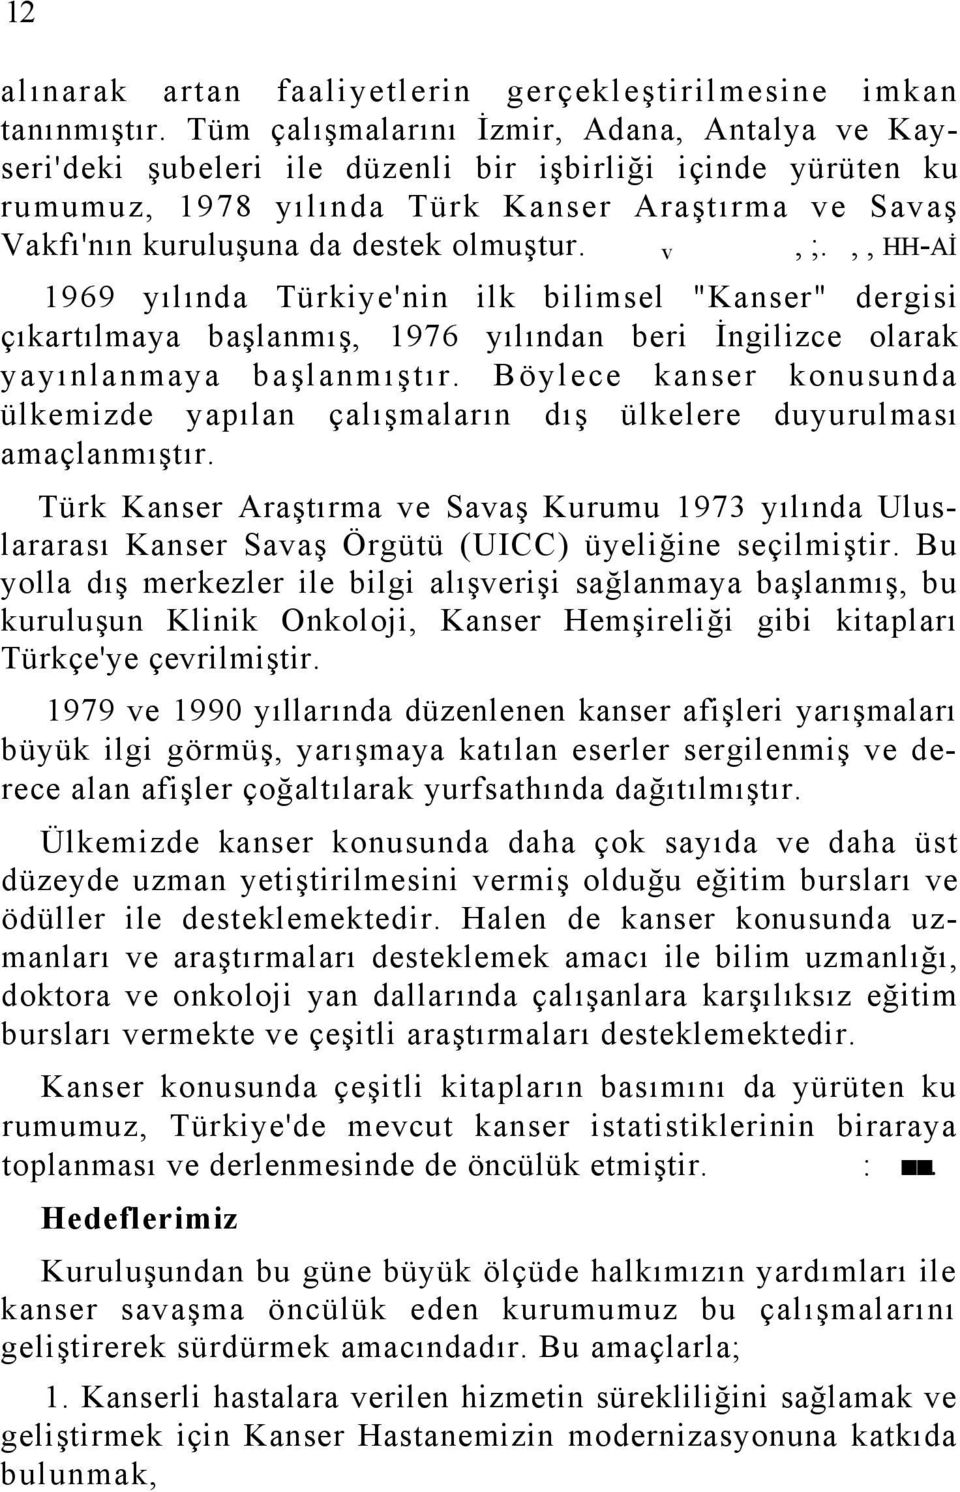 olmuştur. v, ;.,, HH-Aİ 1969 yılında Türkiye'nin ilk bilimsel "Kanser" dergisi çıkartılmaya başlanmış, 1976 yılından beri İngilizce olarak yayınlanmaya başlanmıştır.